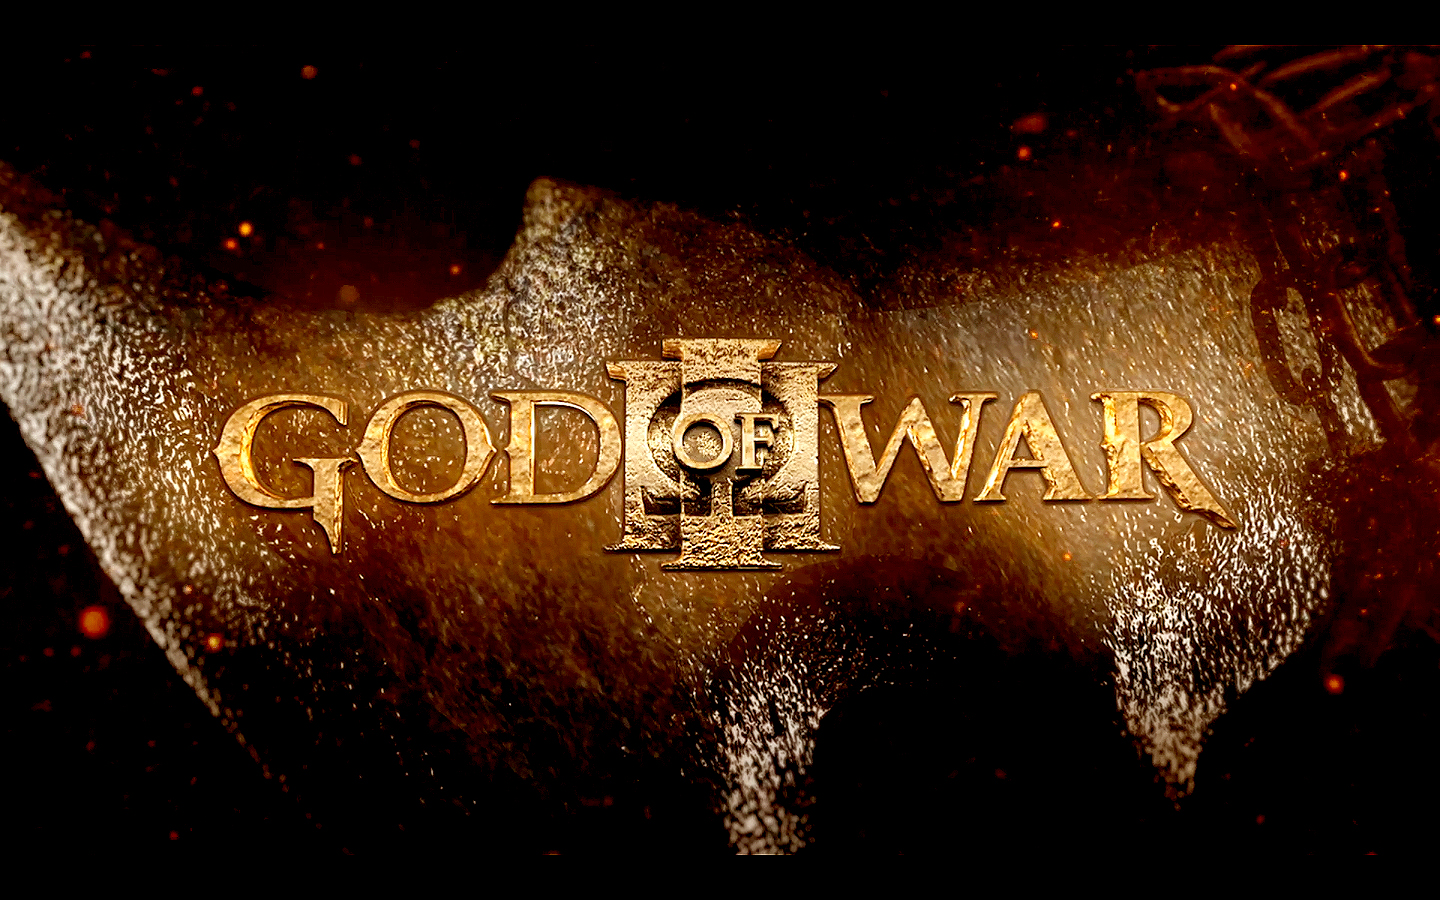 Популярные заставки и фоны Бог Войны 3 на компьютер